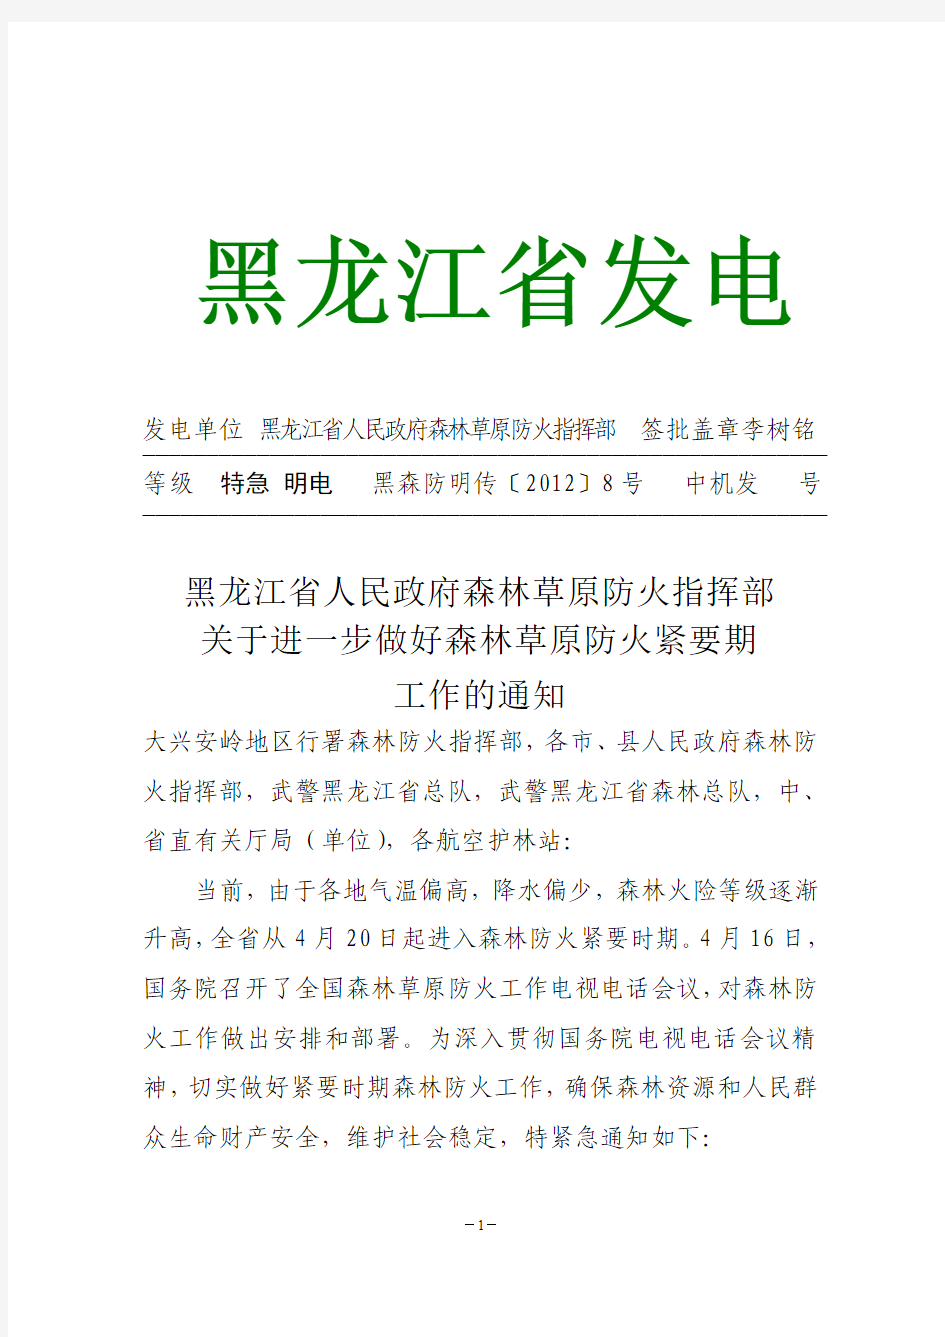 黑龙江省人民政府森林草原防火指挥部工作的通知